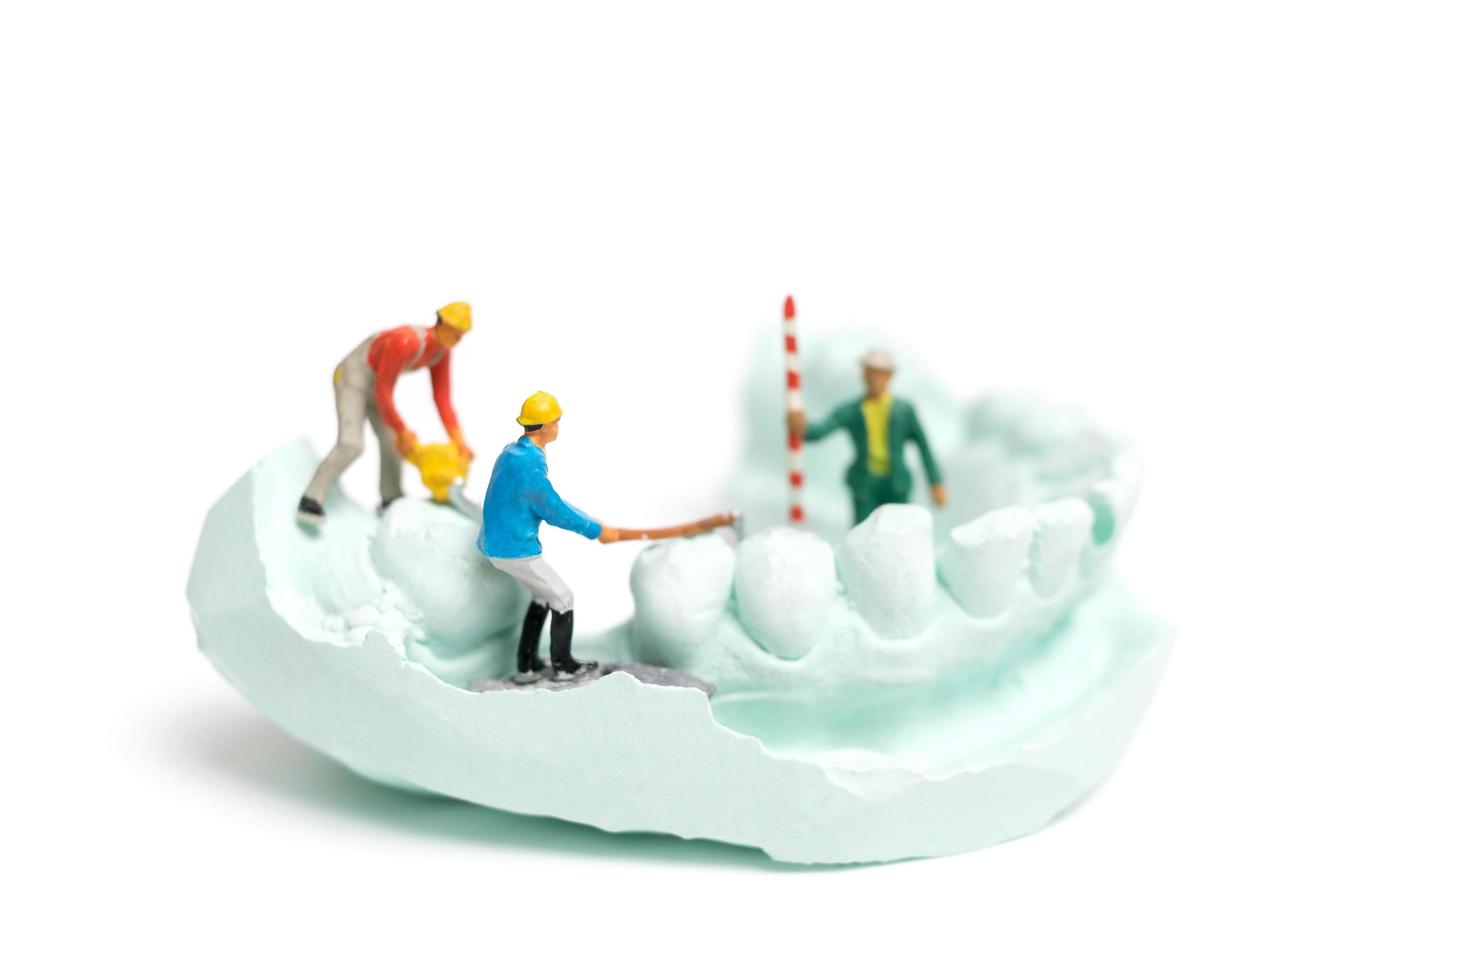 Trabajadores en miniatura llenando dientes falsos y colocándolos en una dentadura postiza hecha con yeso, concepto de laboratorio de prótesis dentales foto